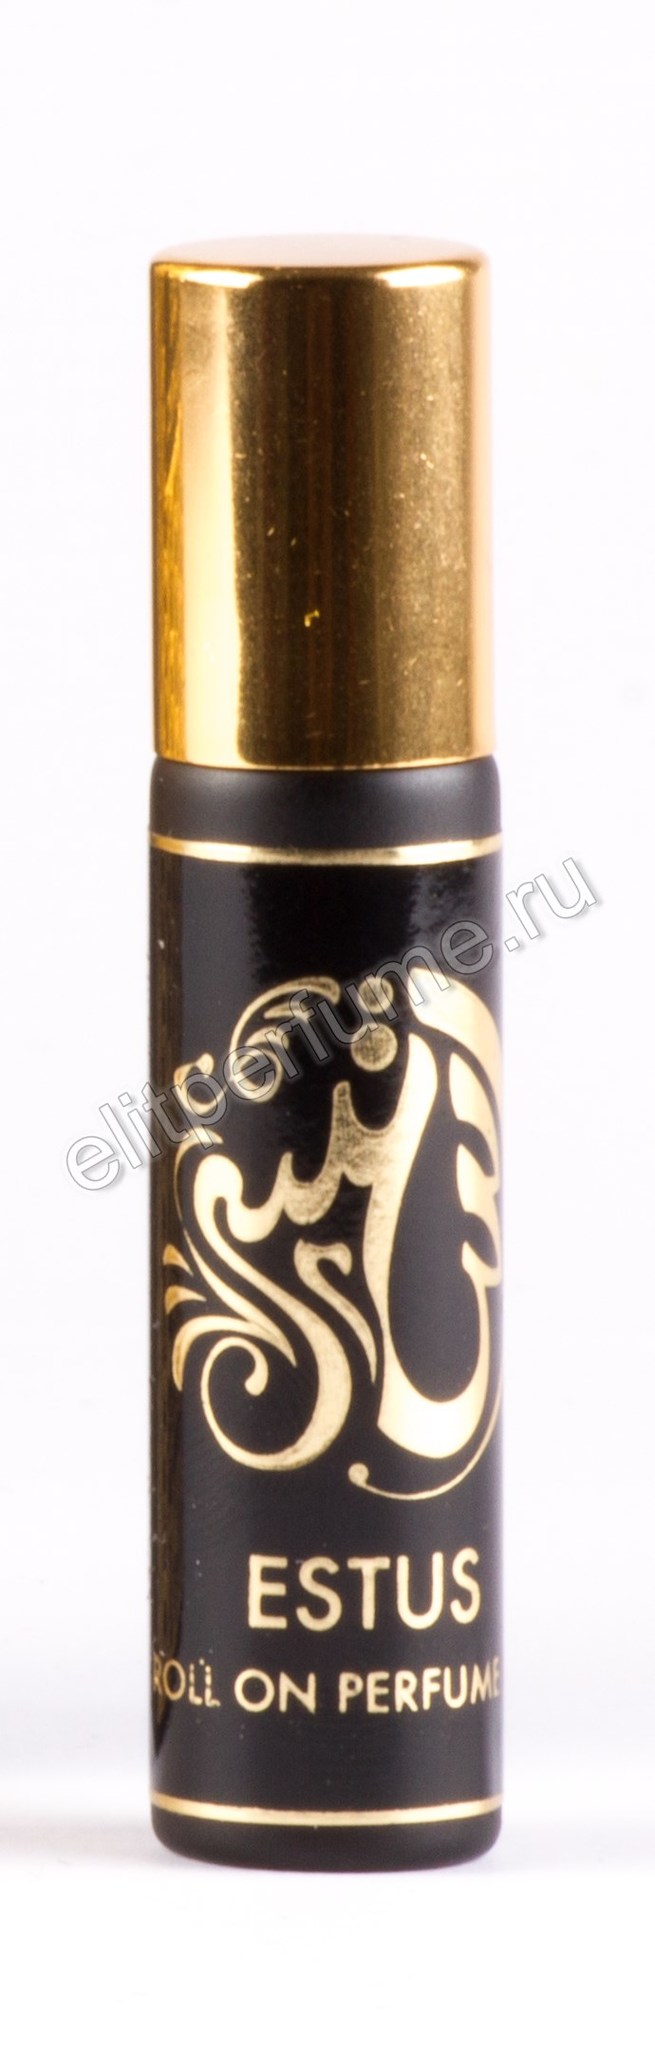 Эстус  Estus 7 мл арабские масляные духи от Арабеск Парфюм Arabesque Perfumes